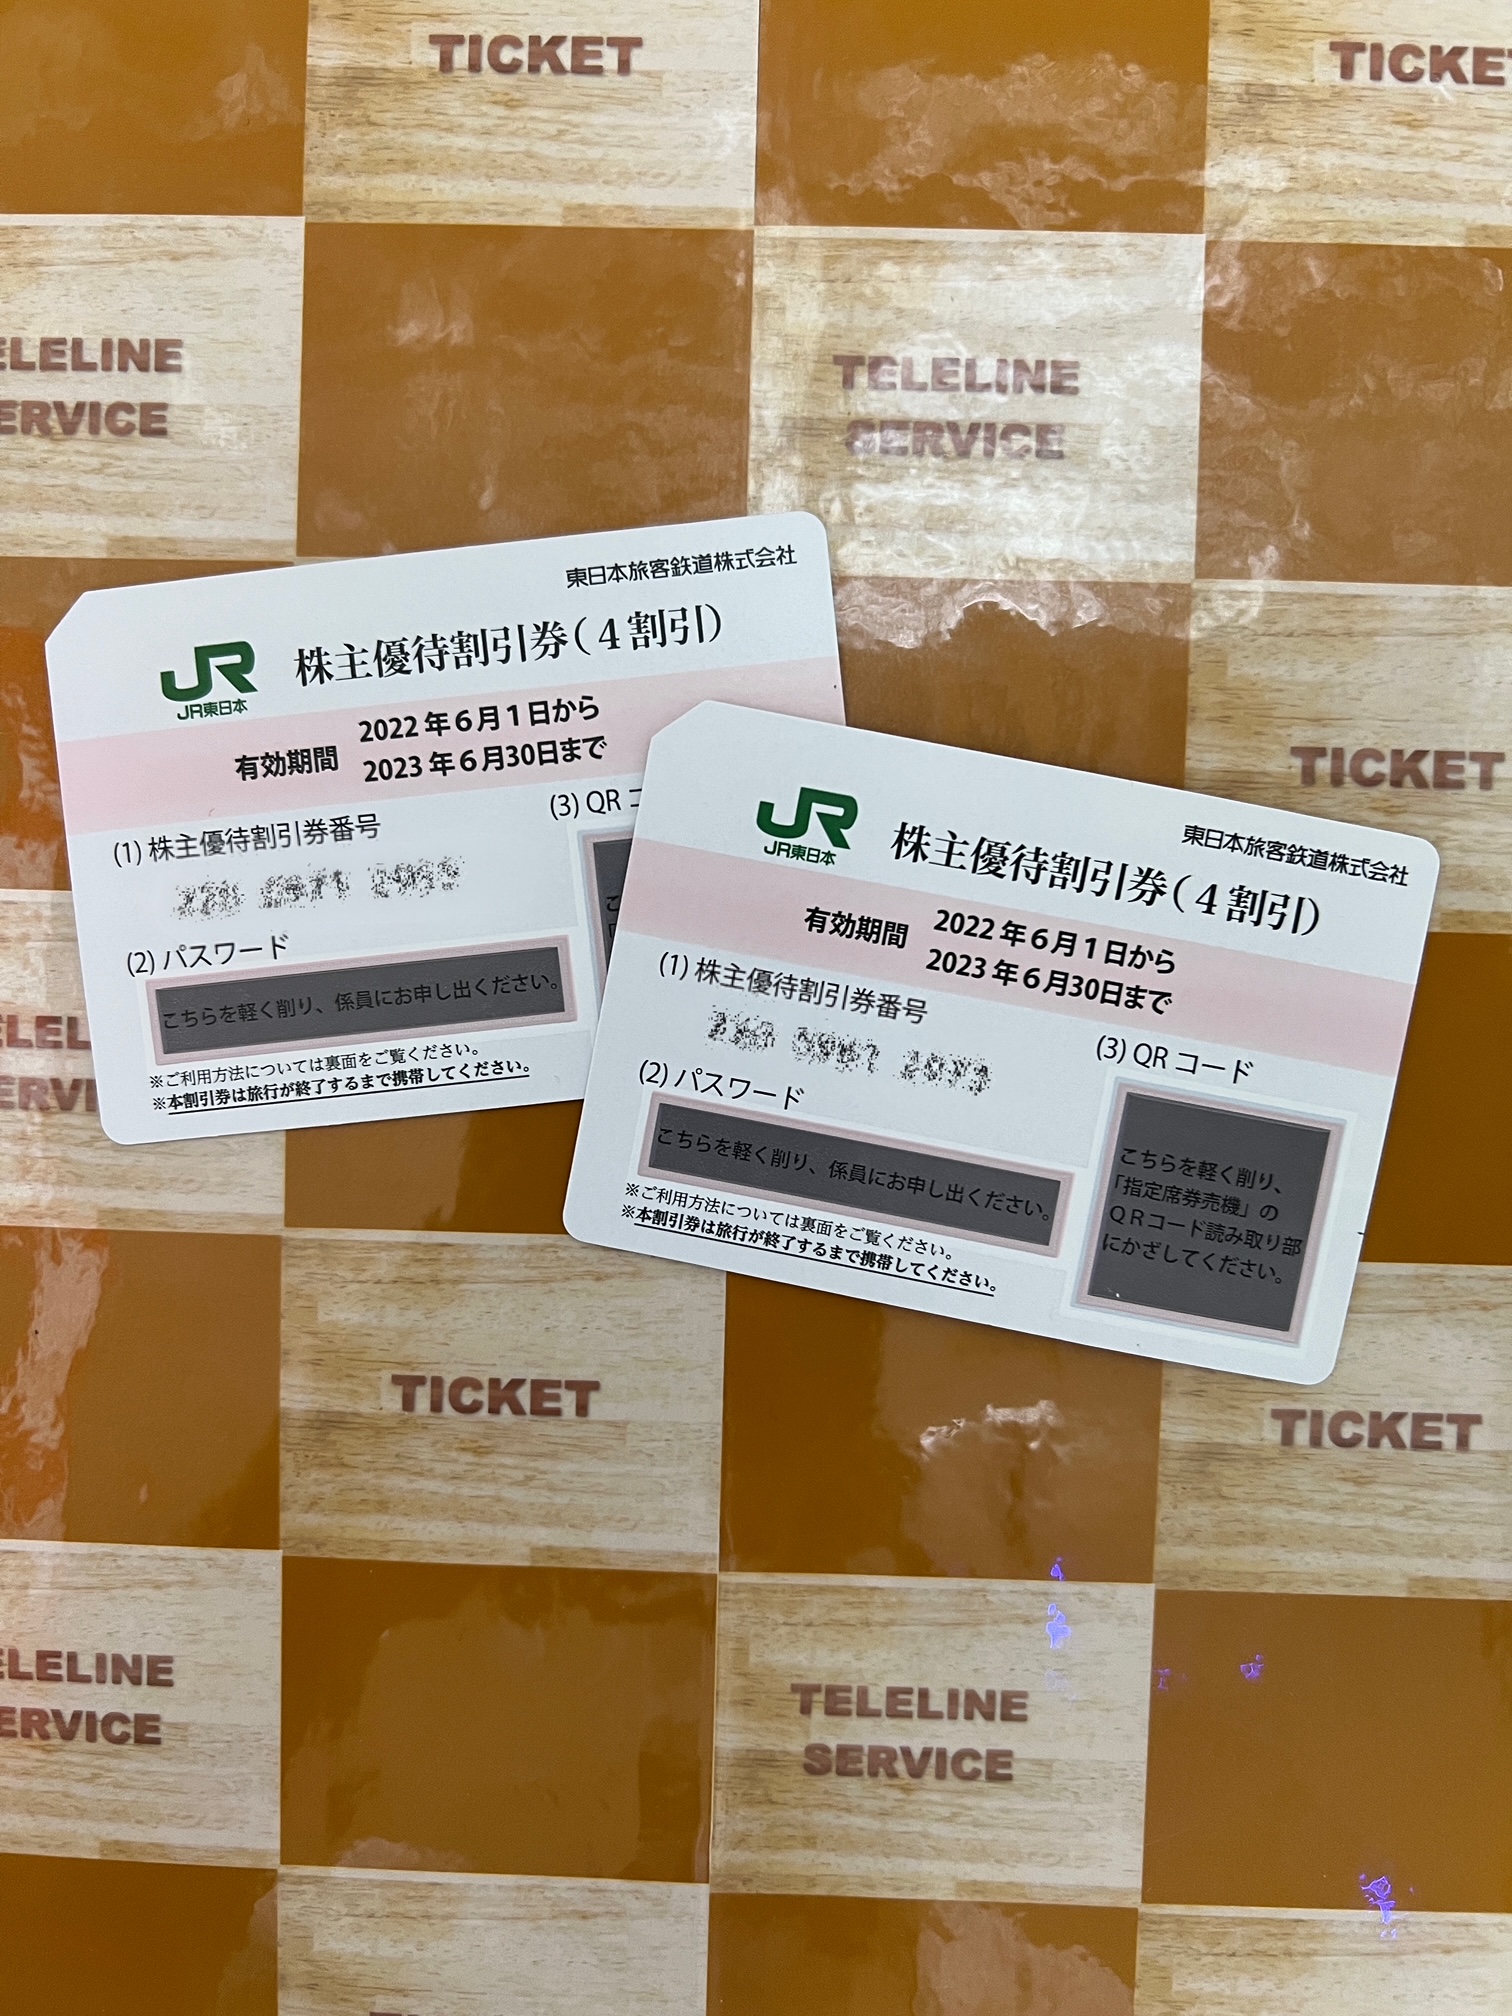 JR東日本 株主優待割引券    東日本旅客鉄道